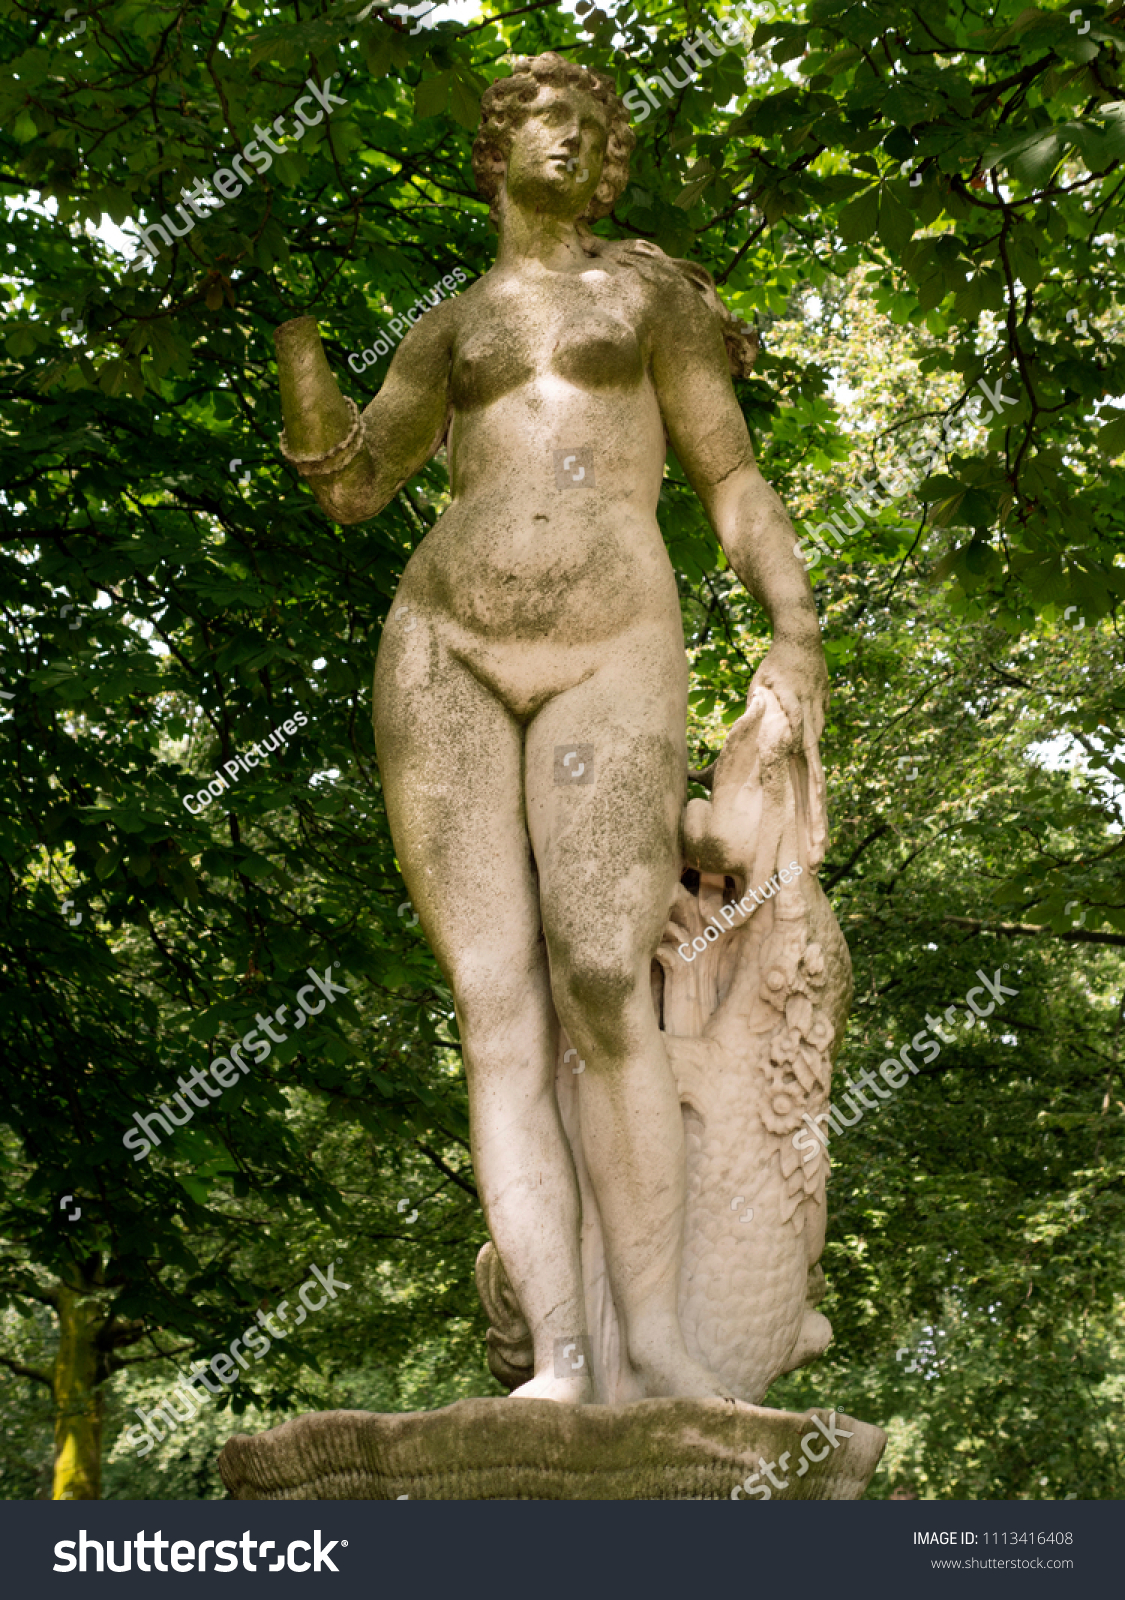 Nude foto girl in Brussels